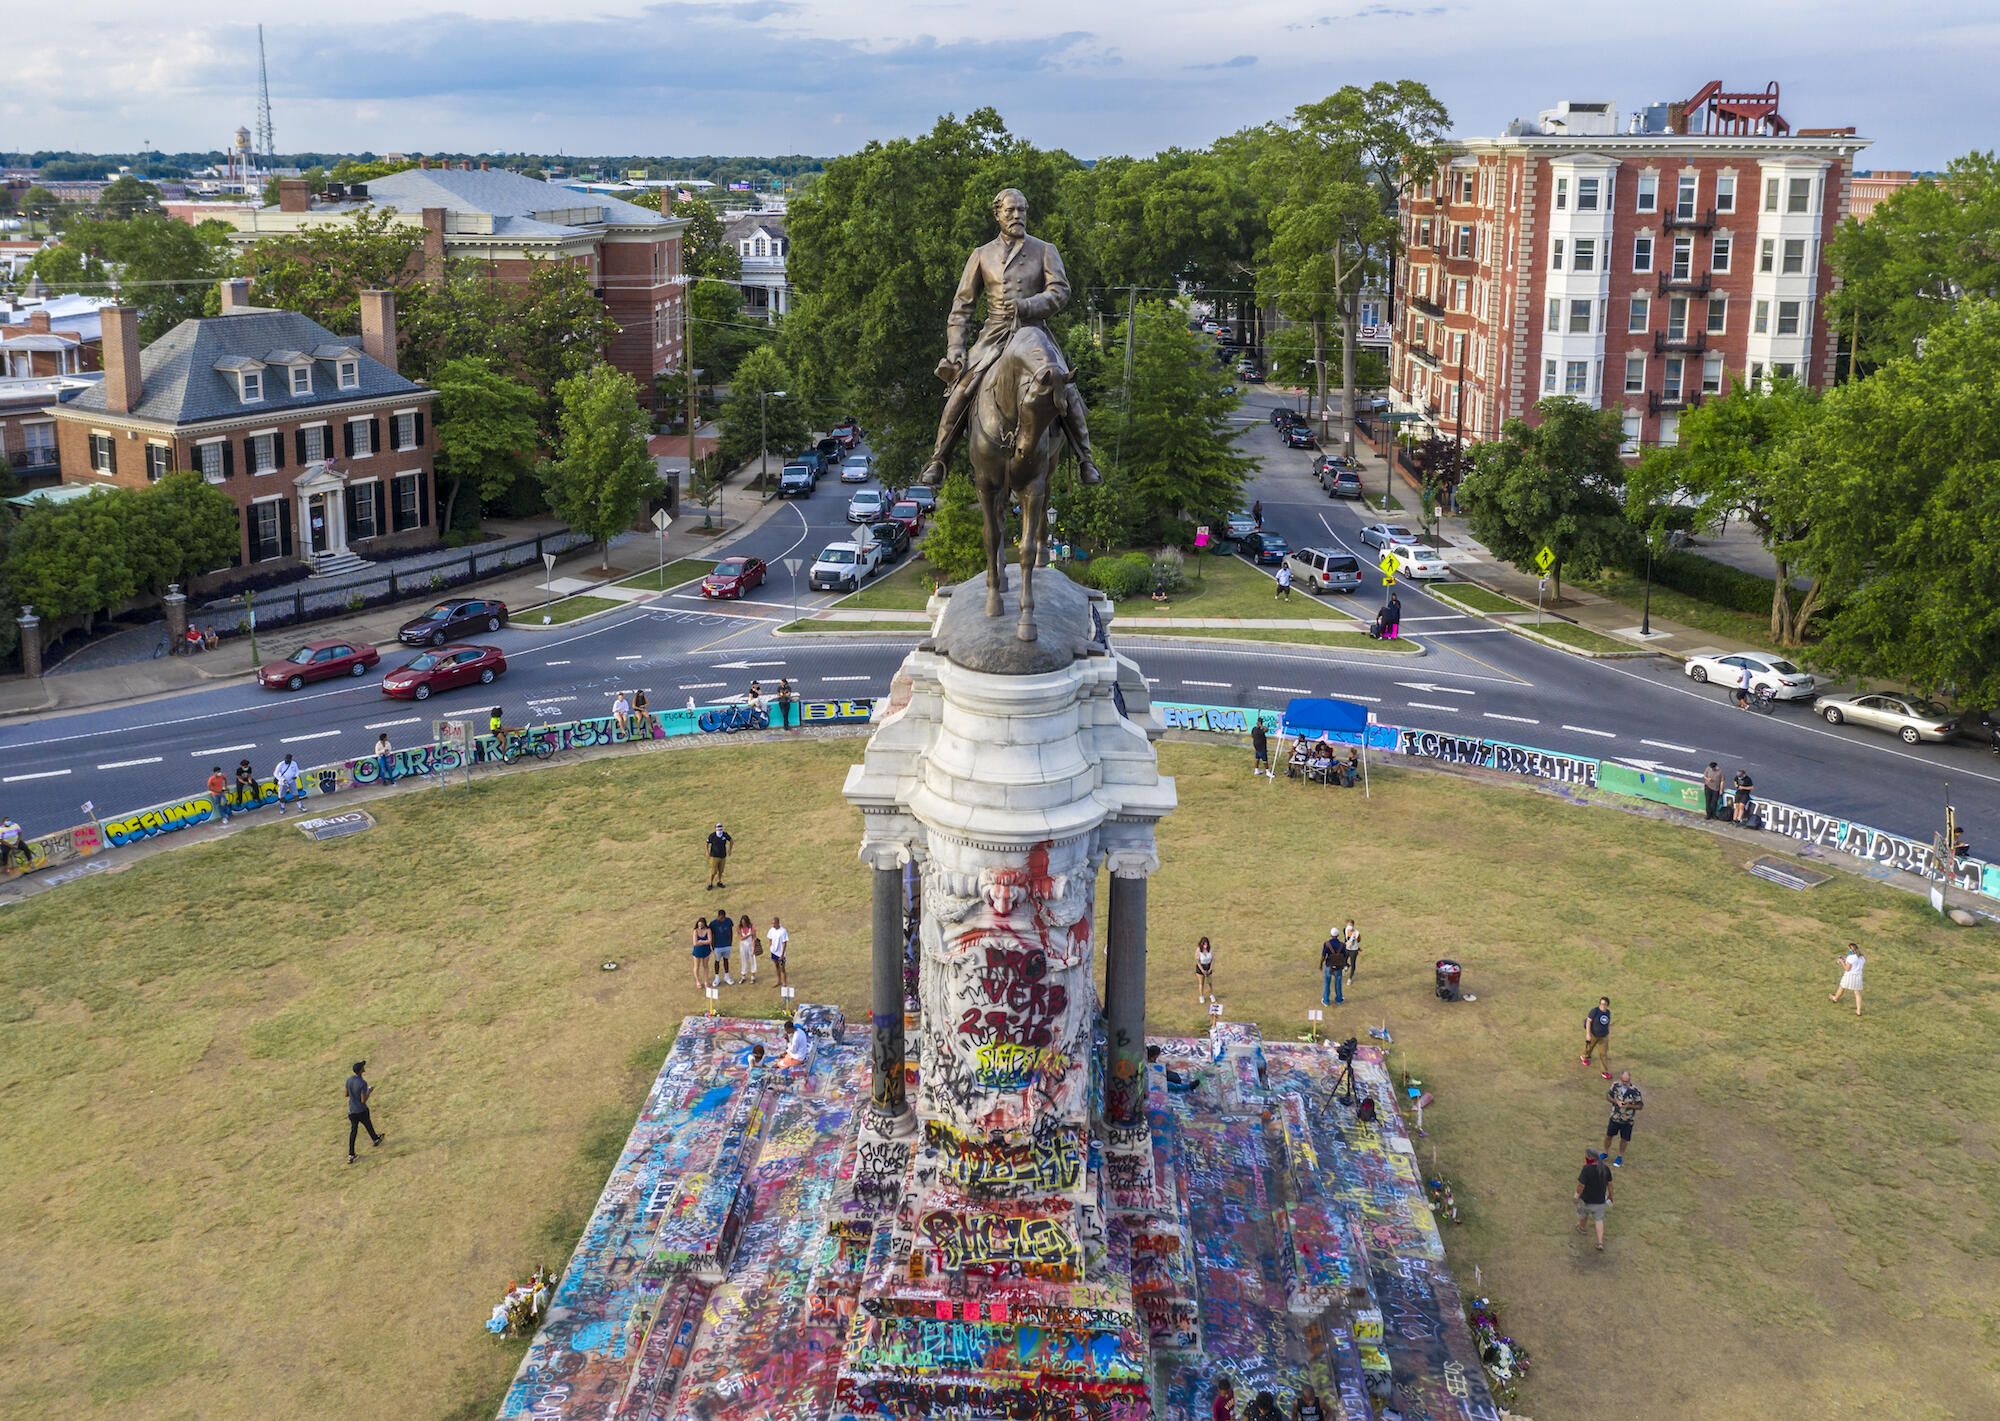 Robert E. Lee statue